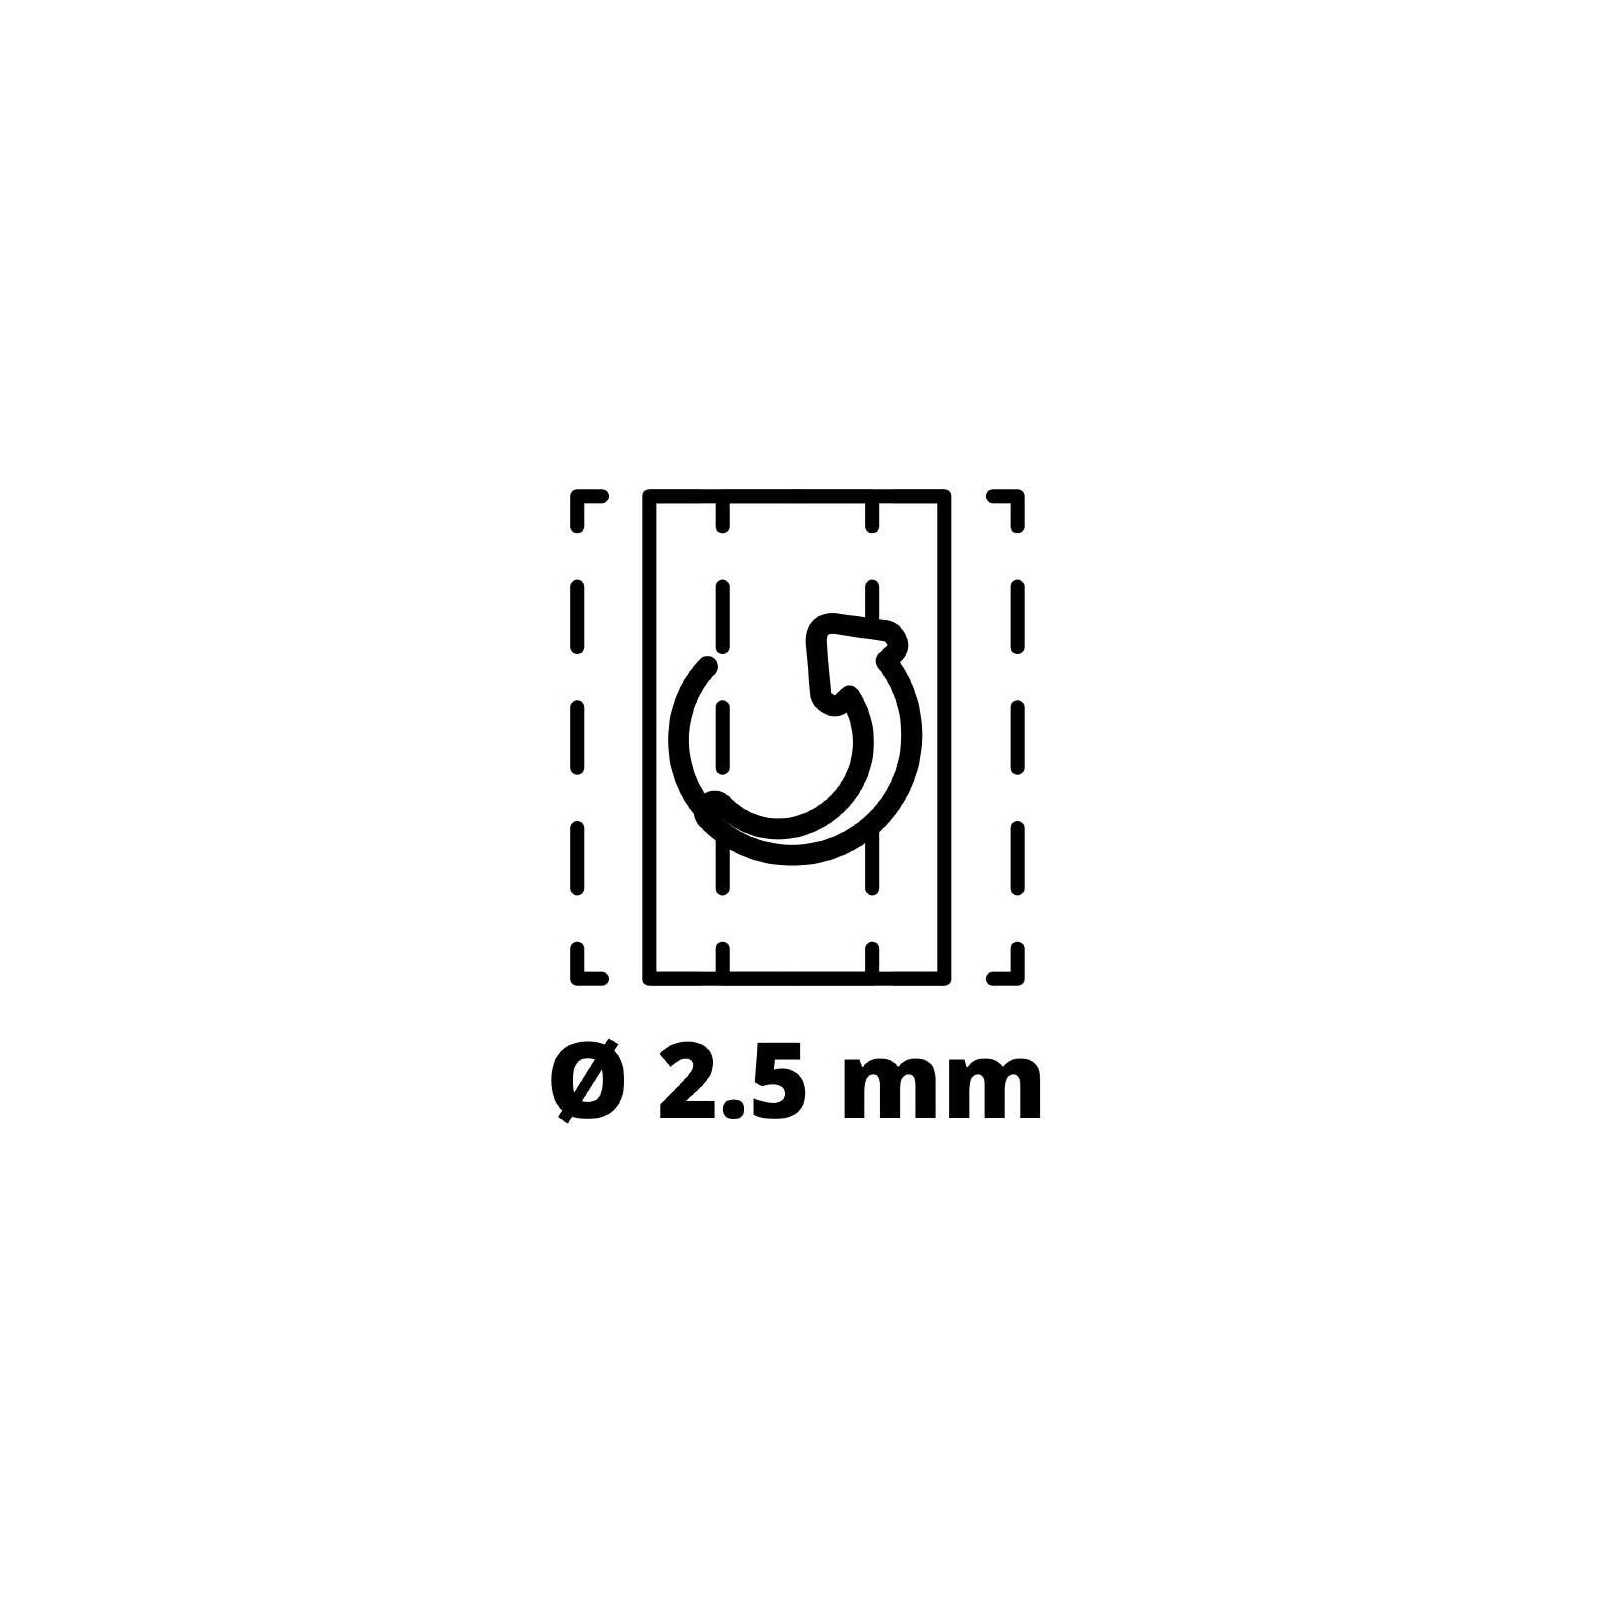 Шлифовальная машина Einhell TE-OS 18/230 Li - Solo, PXC, 18В, 230х115 мм (без АКБ и ЗУ) (4460720) изображение 10